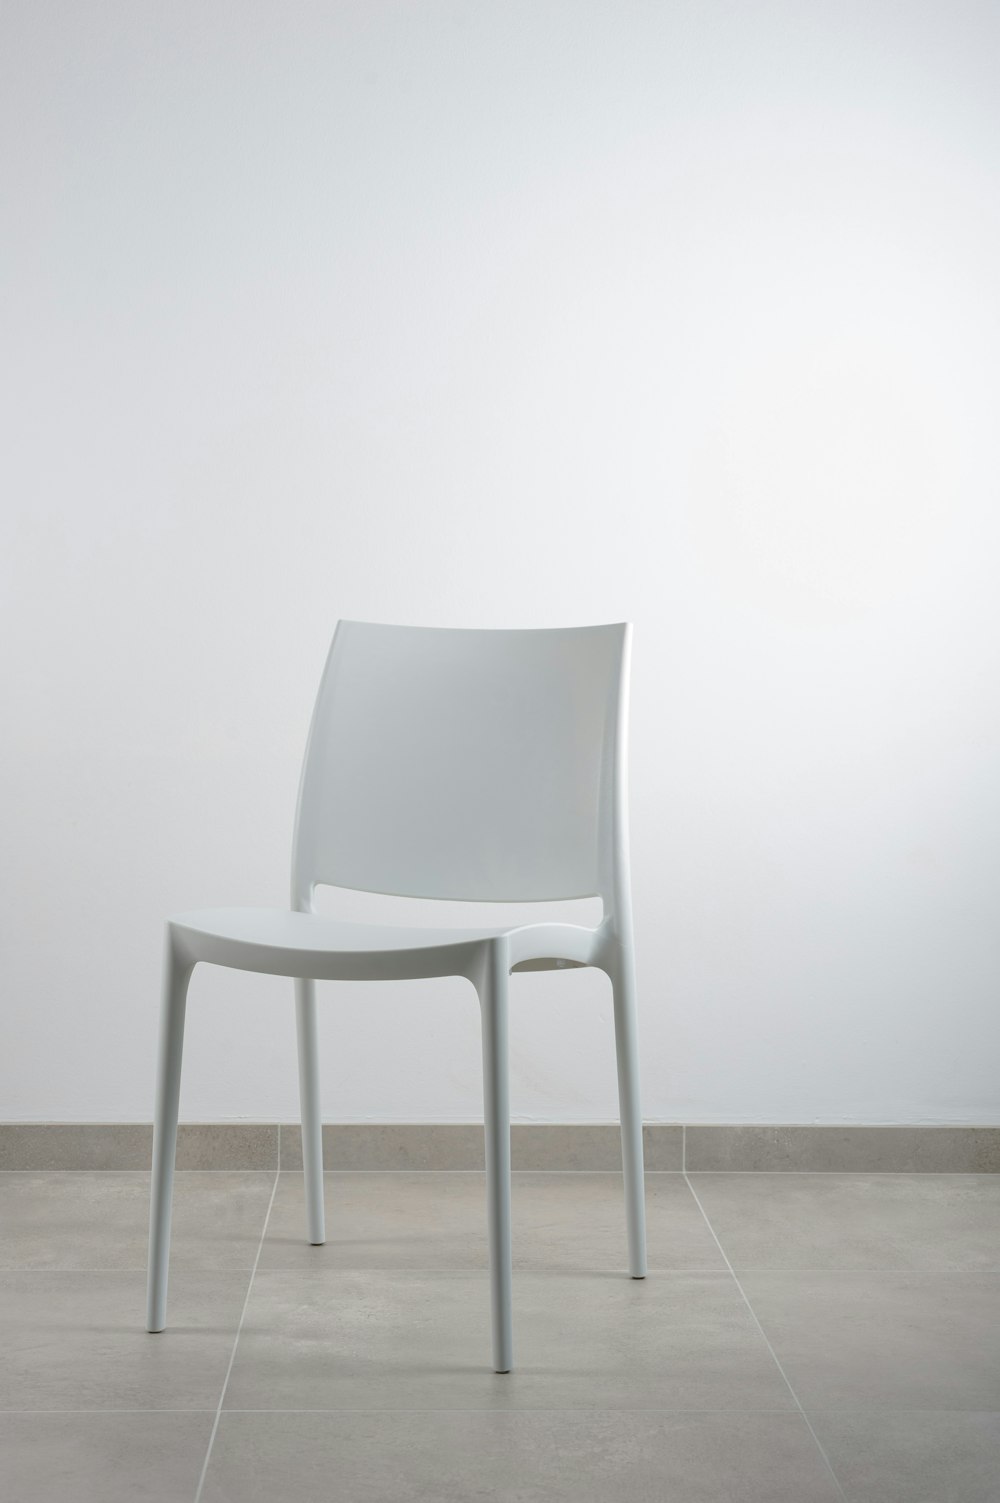 sedia bianca senza braccioli vicino al muro bianco